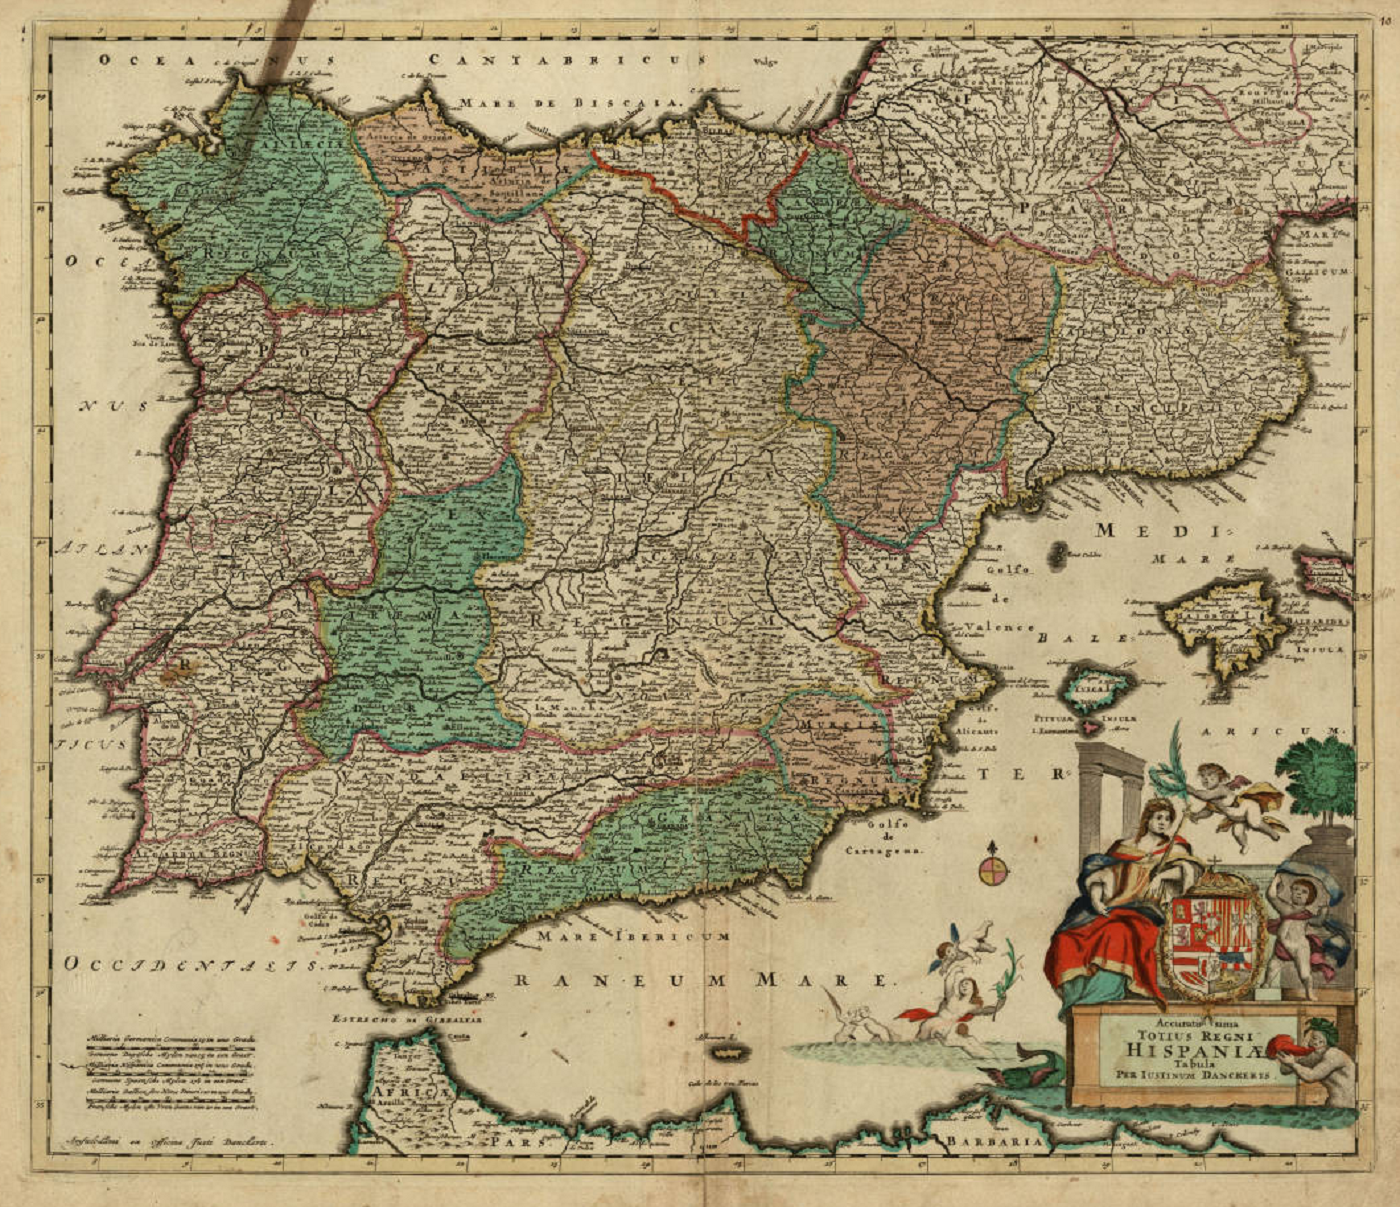 Imatge 3. Mapa de la península ibèrica (1690), obra de Justus Danckerts. Font Institut Cartografic de Catalunya